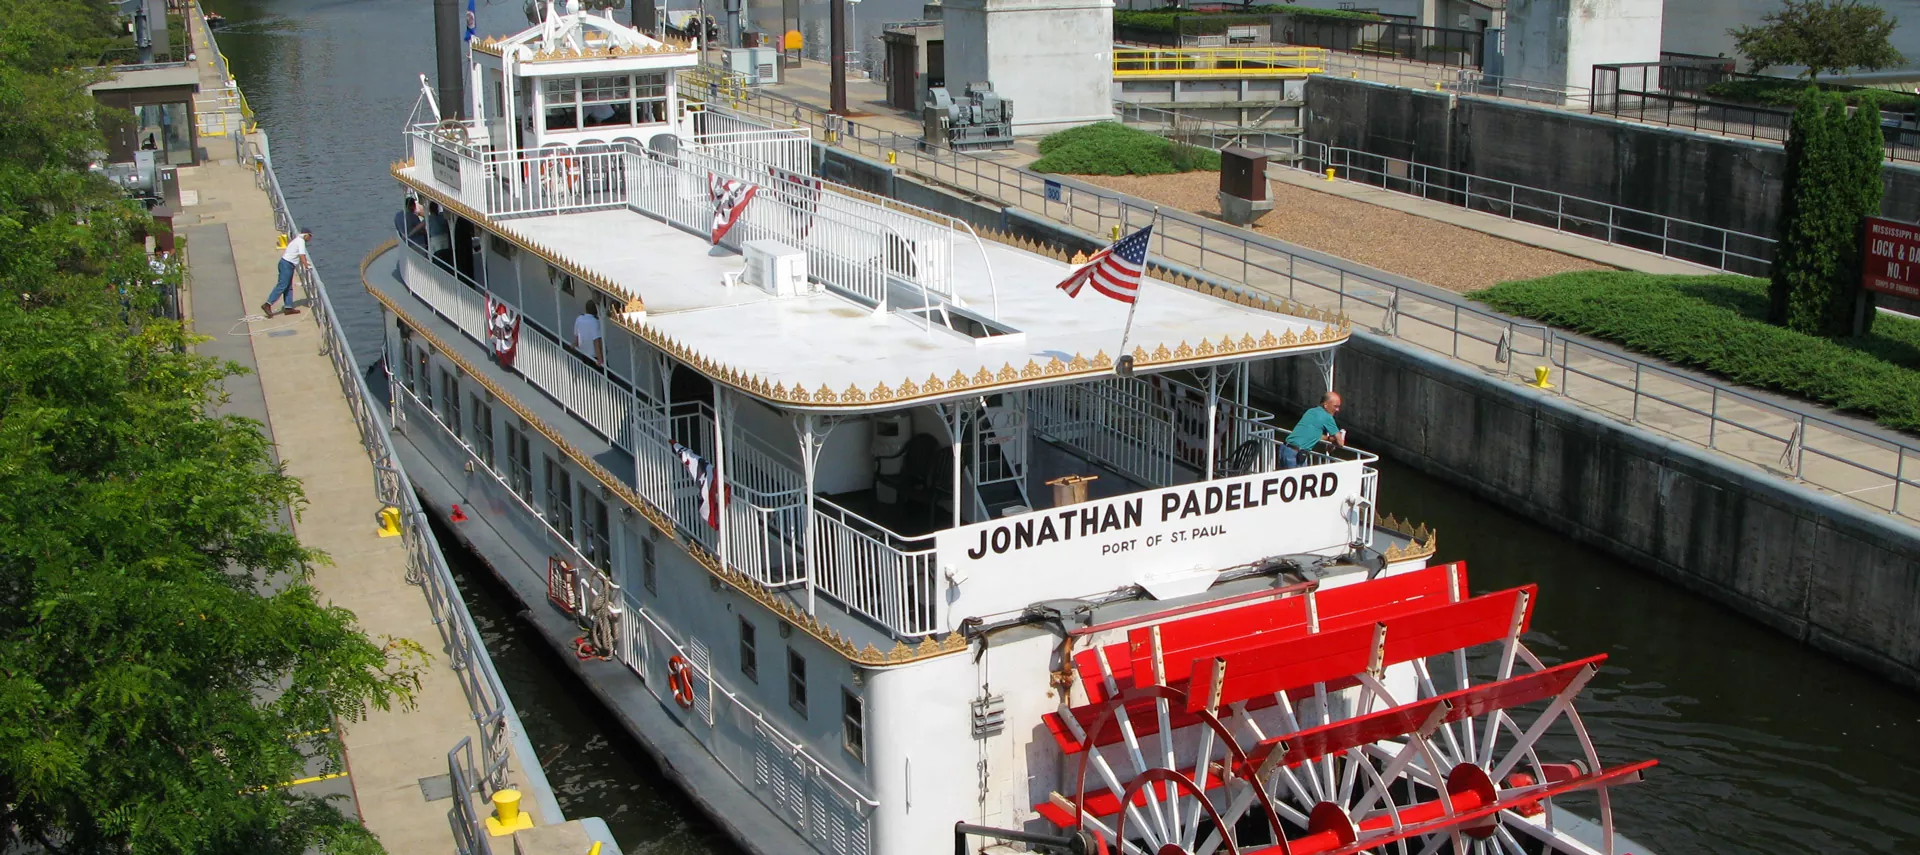 Sternwheel Sunday Cruises on the Mississippi